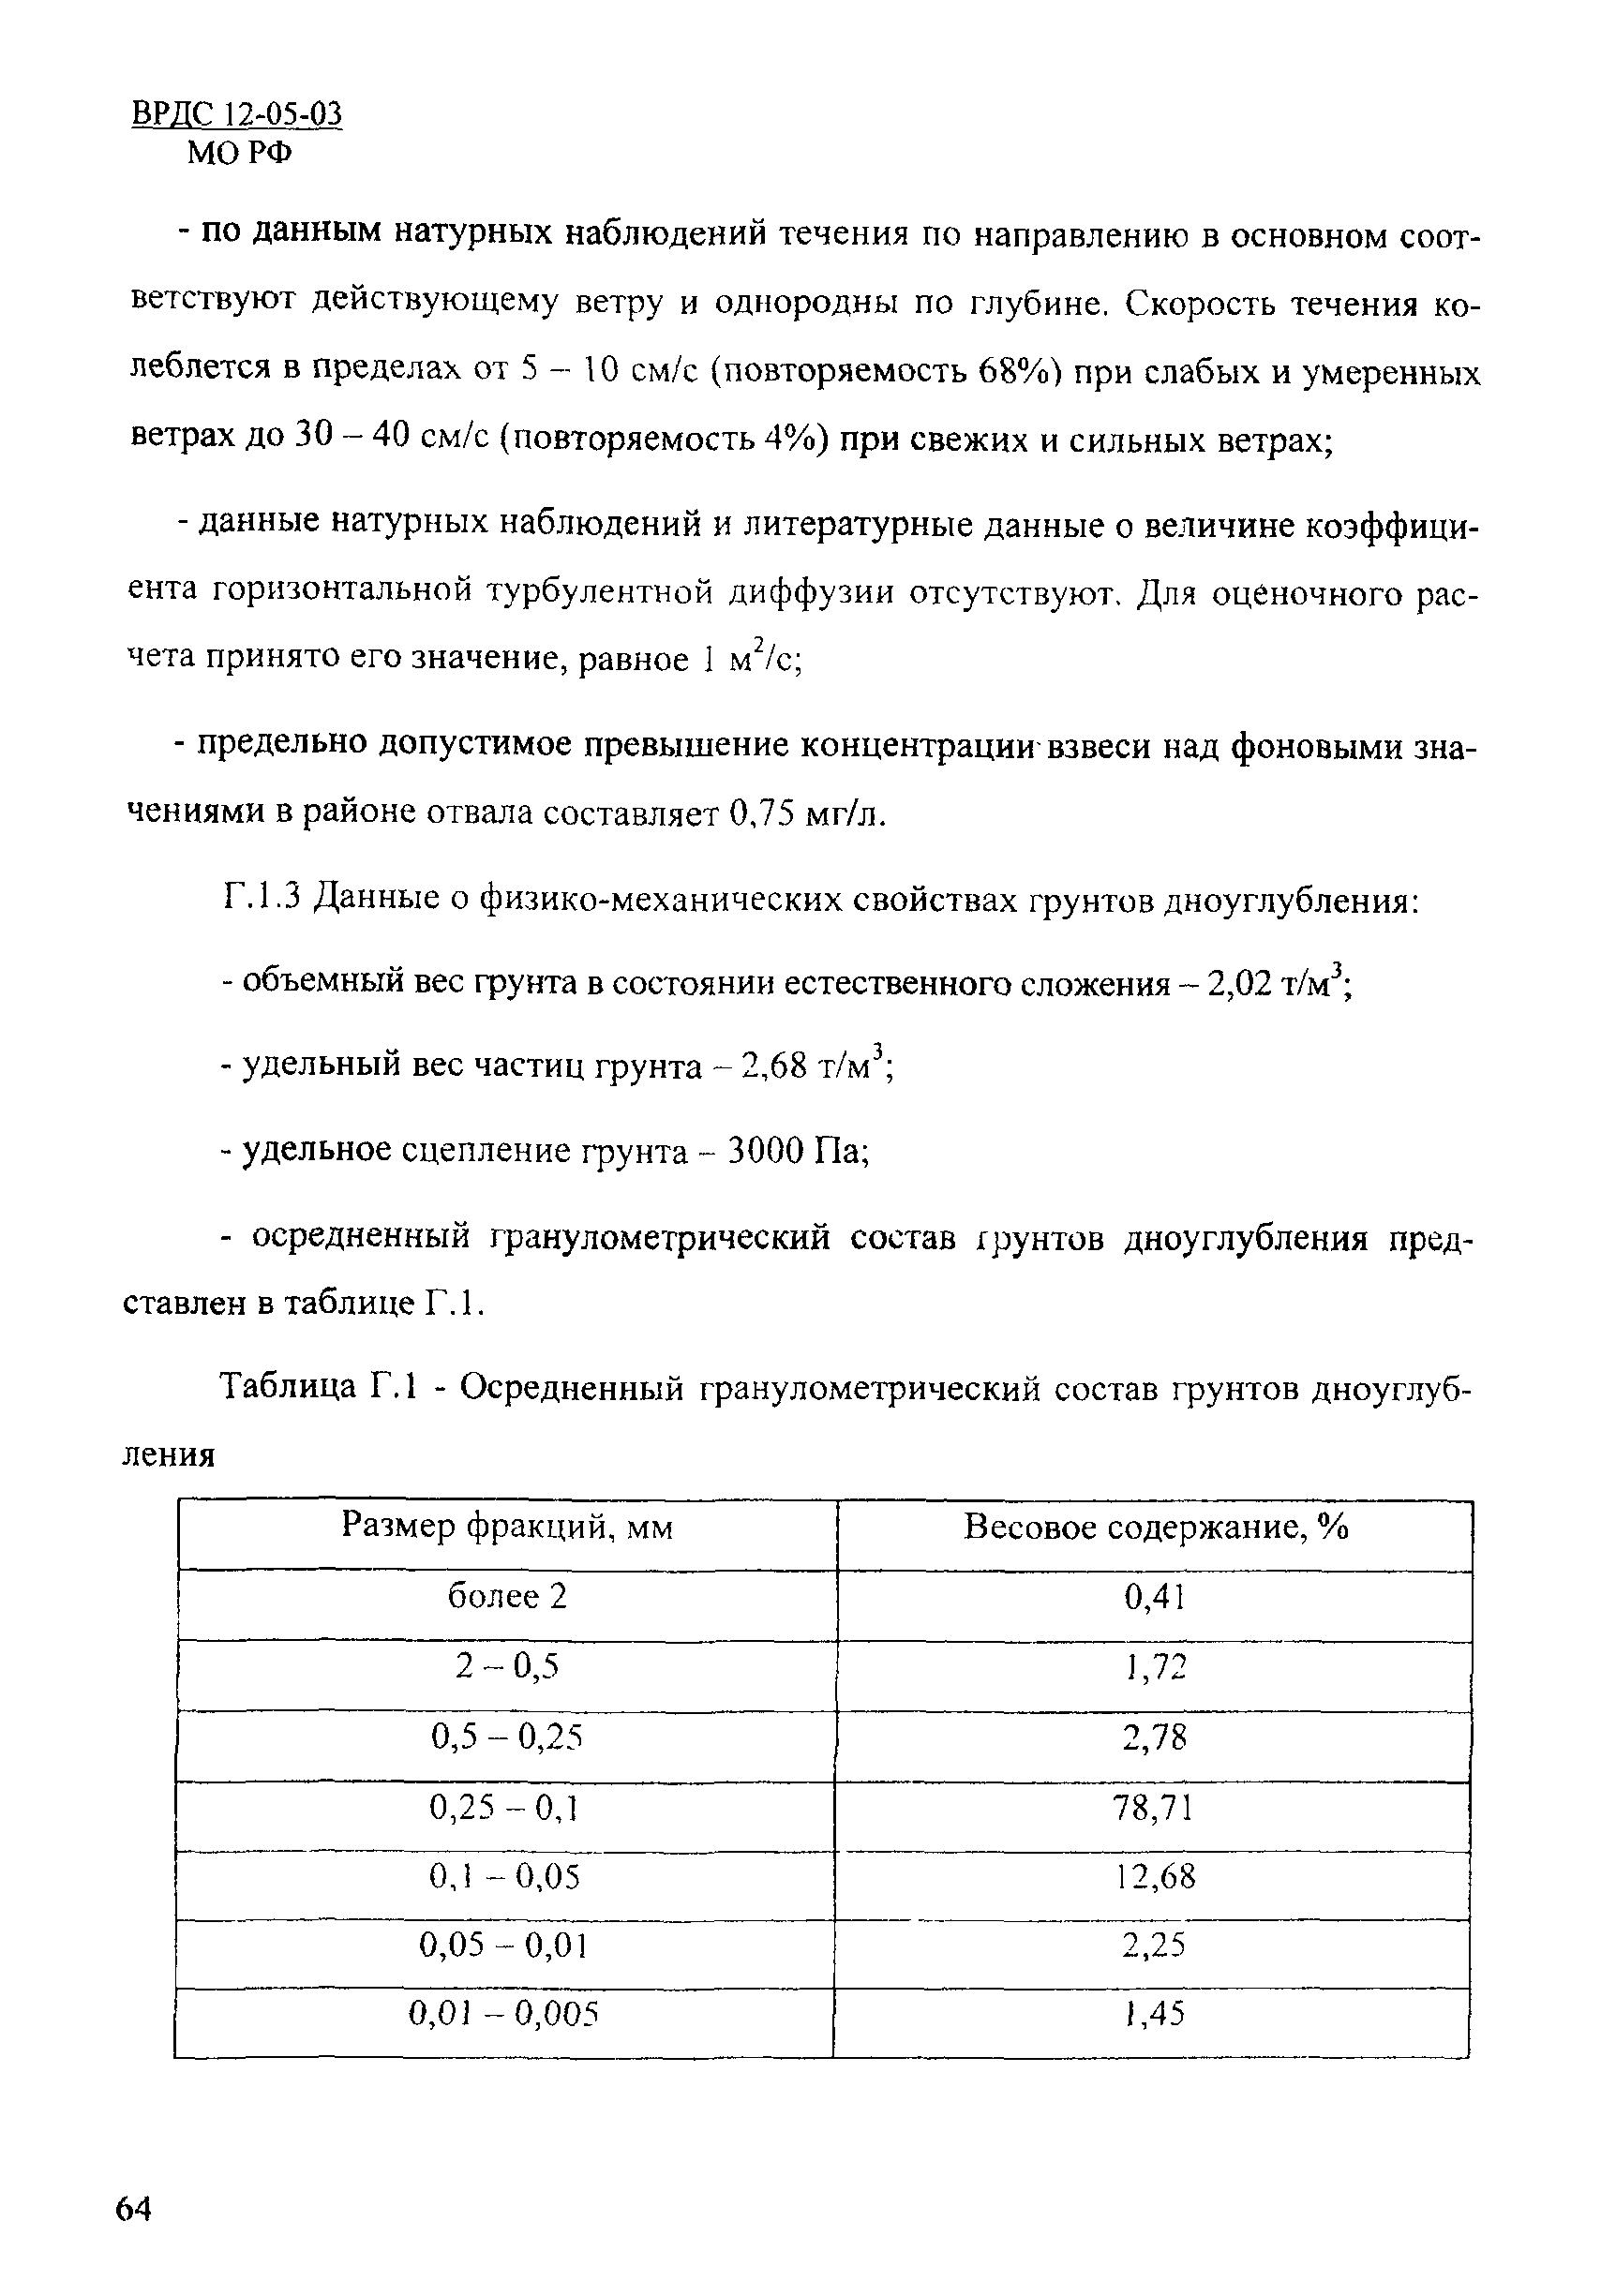 ВРДС 12-05-03 МО РФ